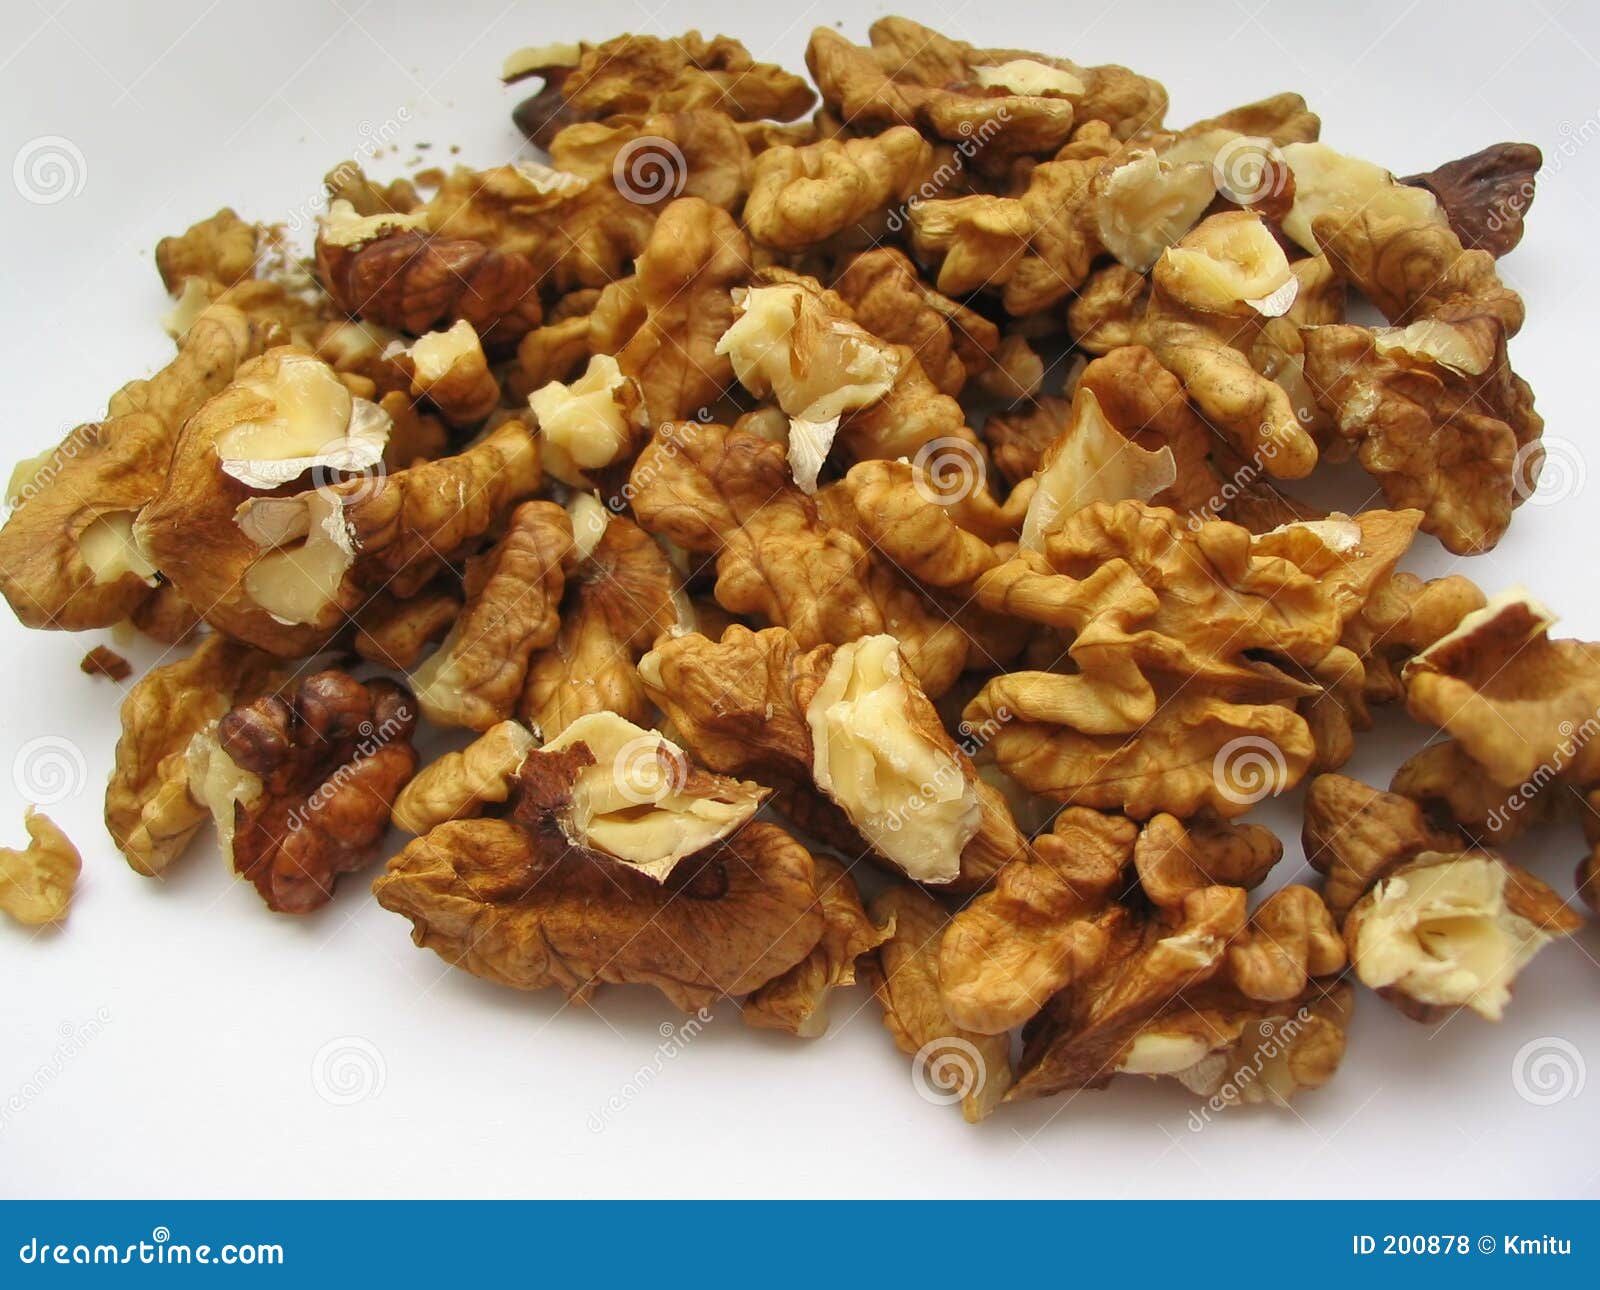 shelled walnuts #5